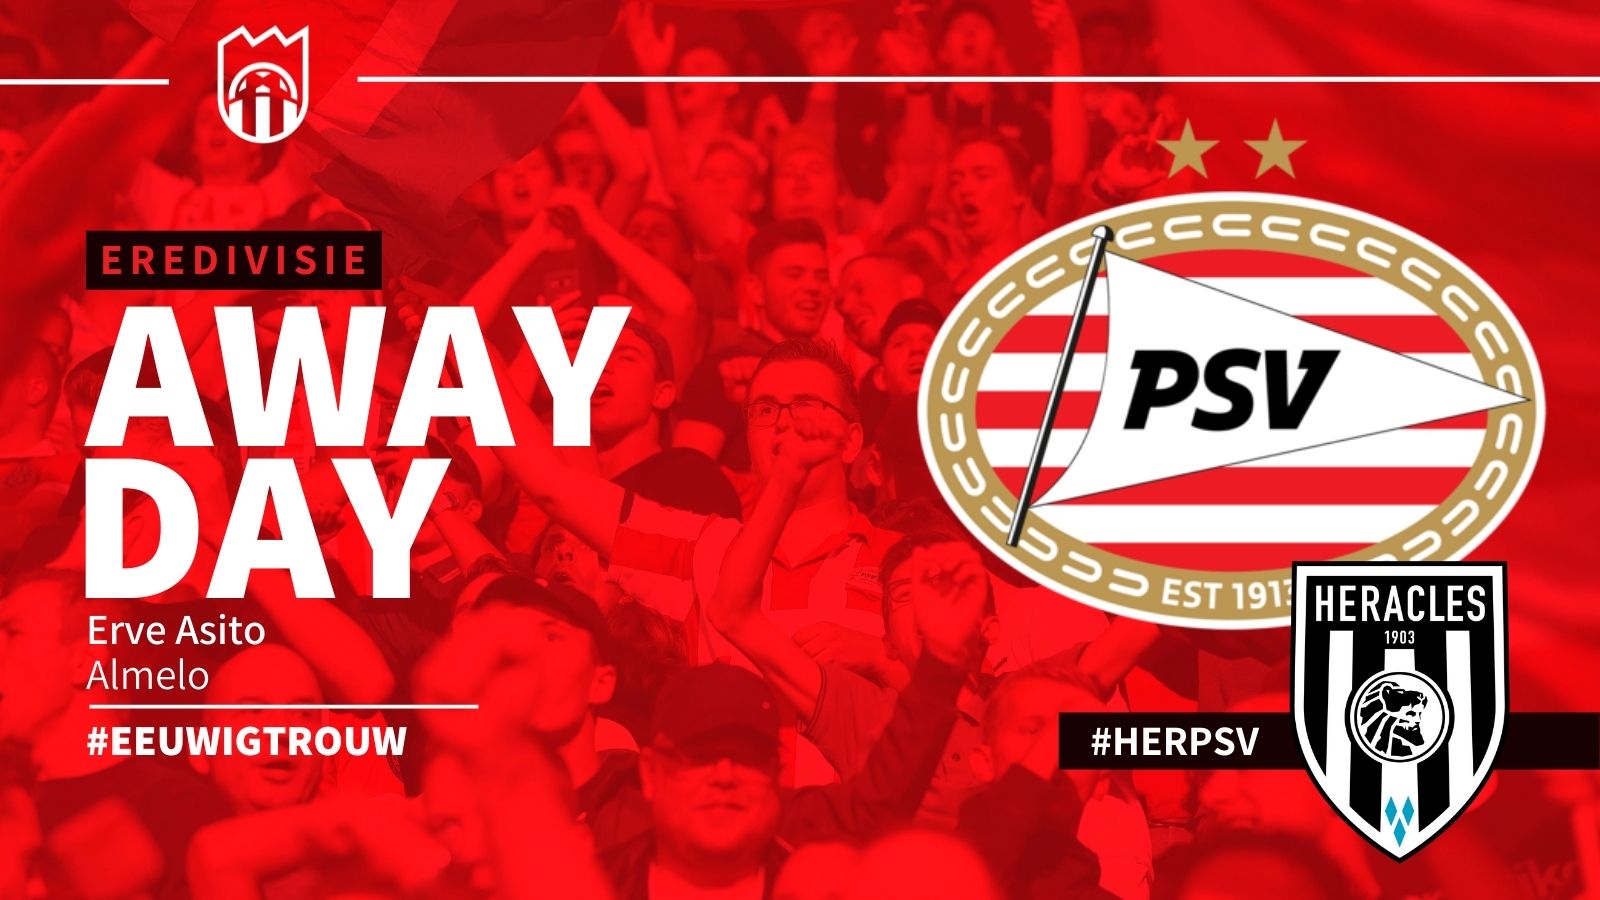 Eredivisie : Heracles Almelo - PSV (0 - 2)